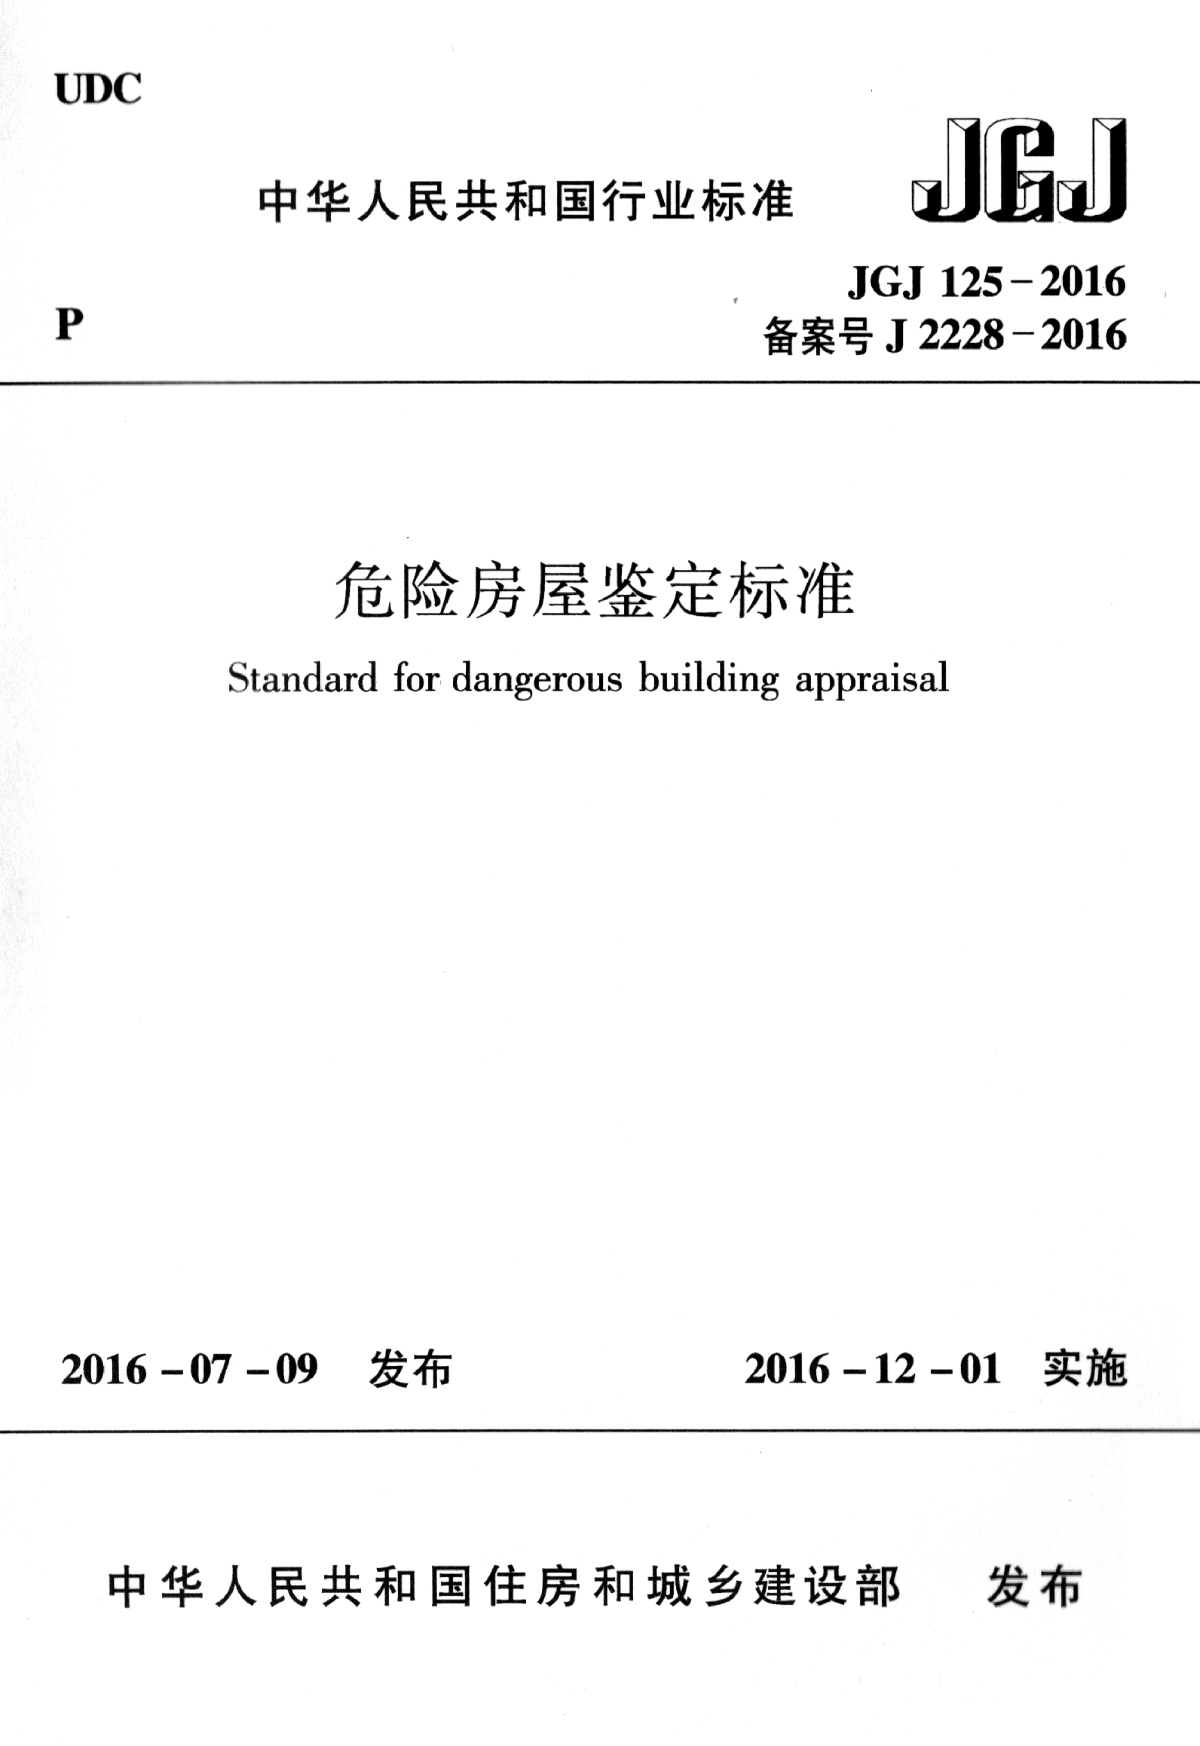 高清正版最新版 JGJ 125-2016 危险房屋鉴定标准-图一